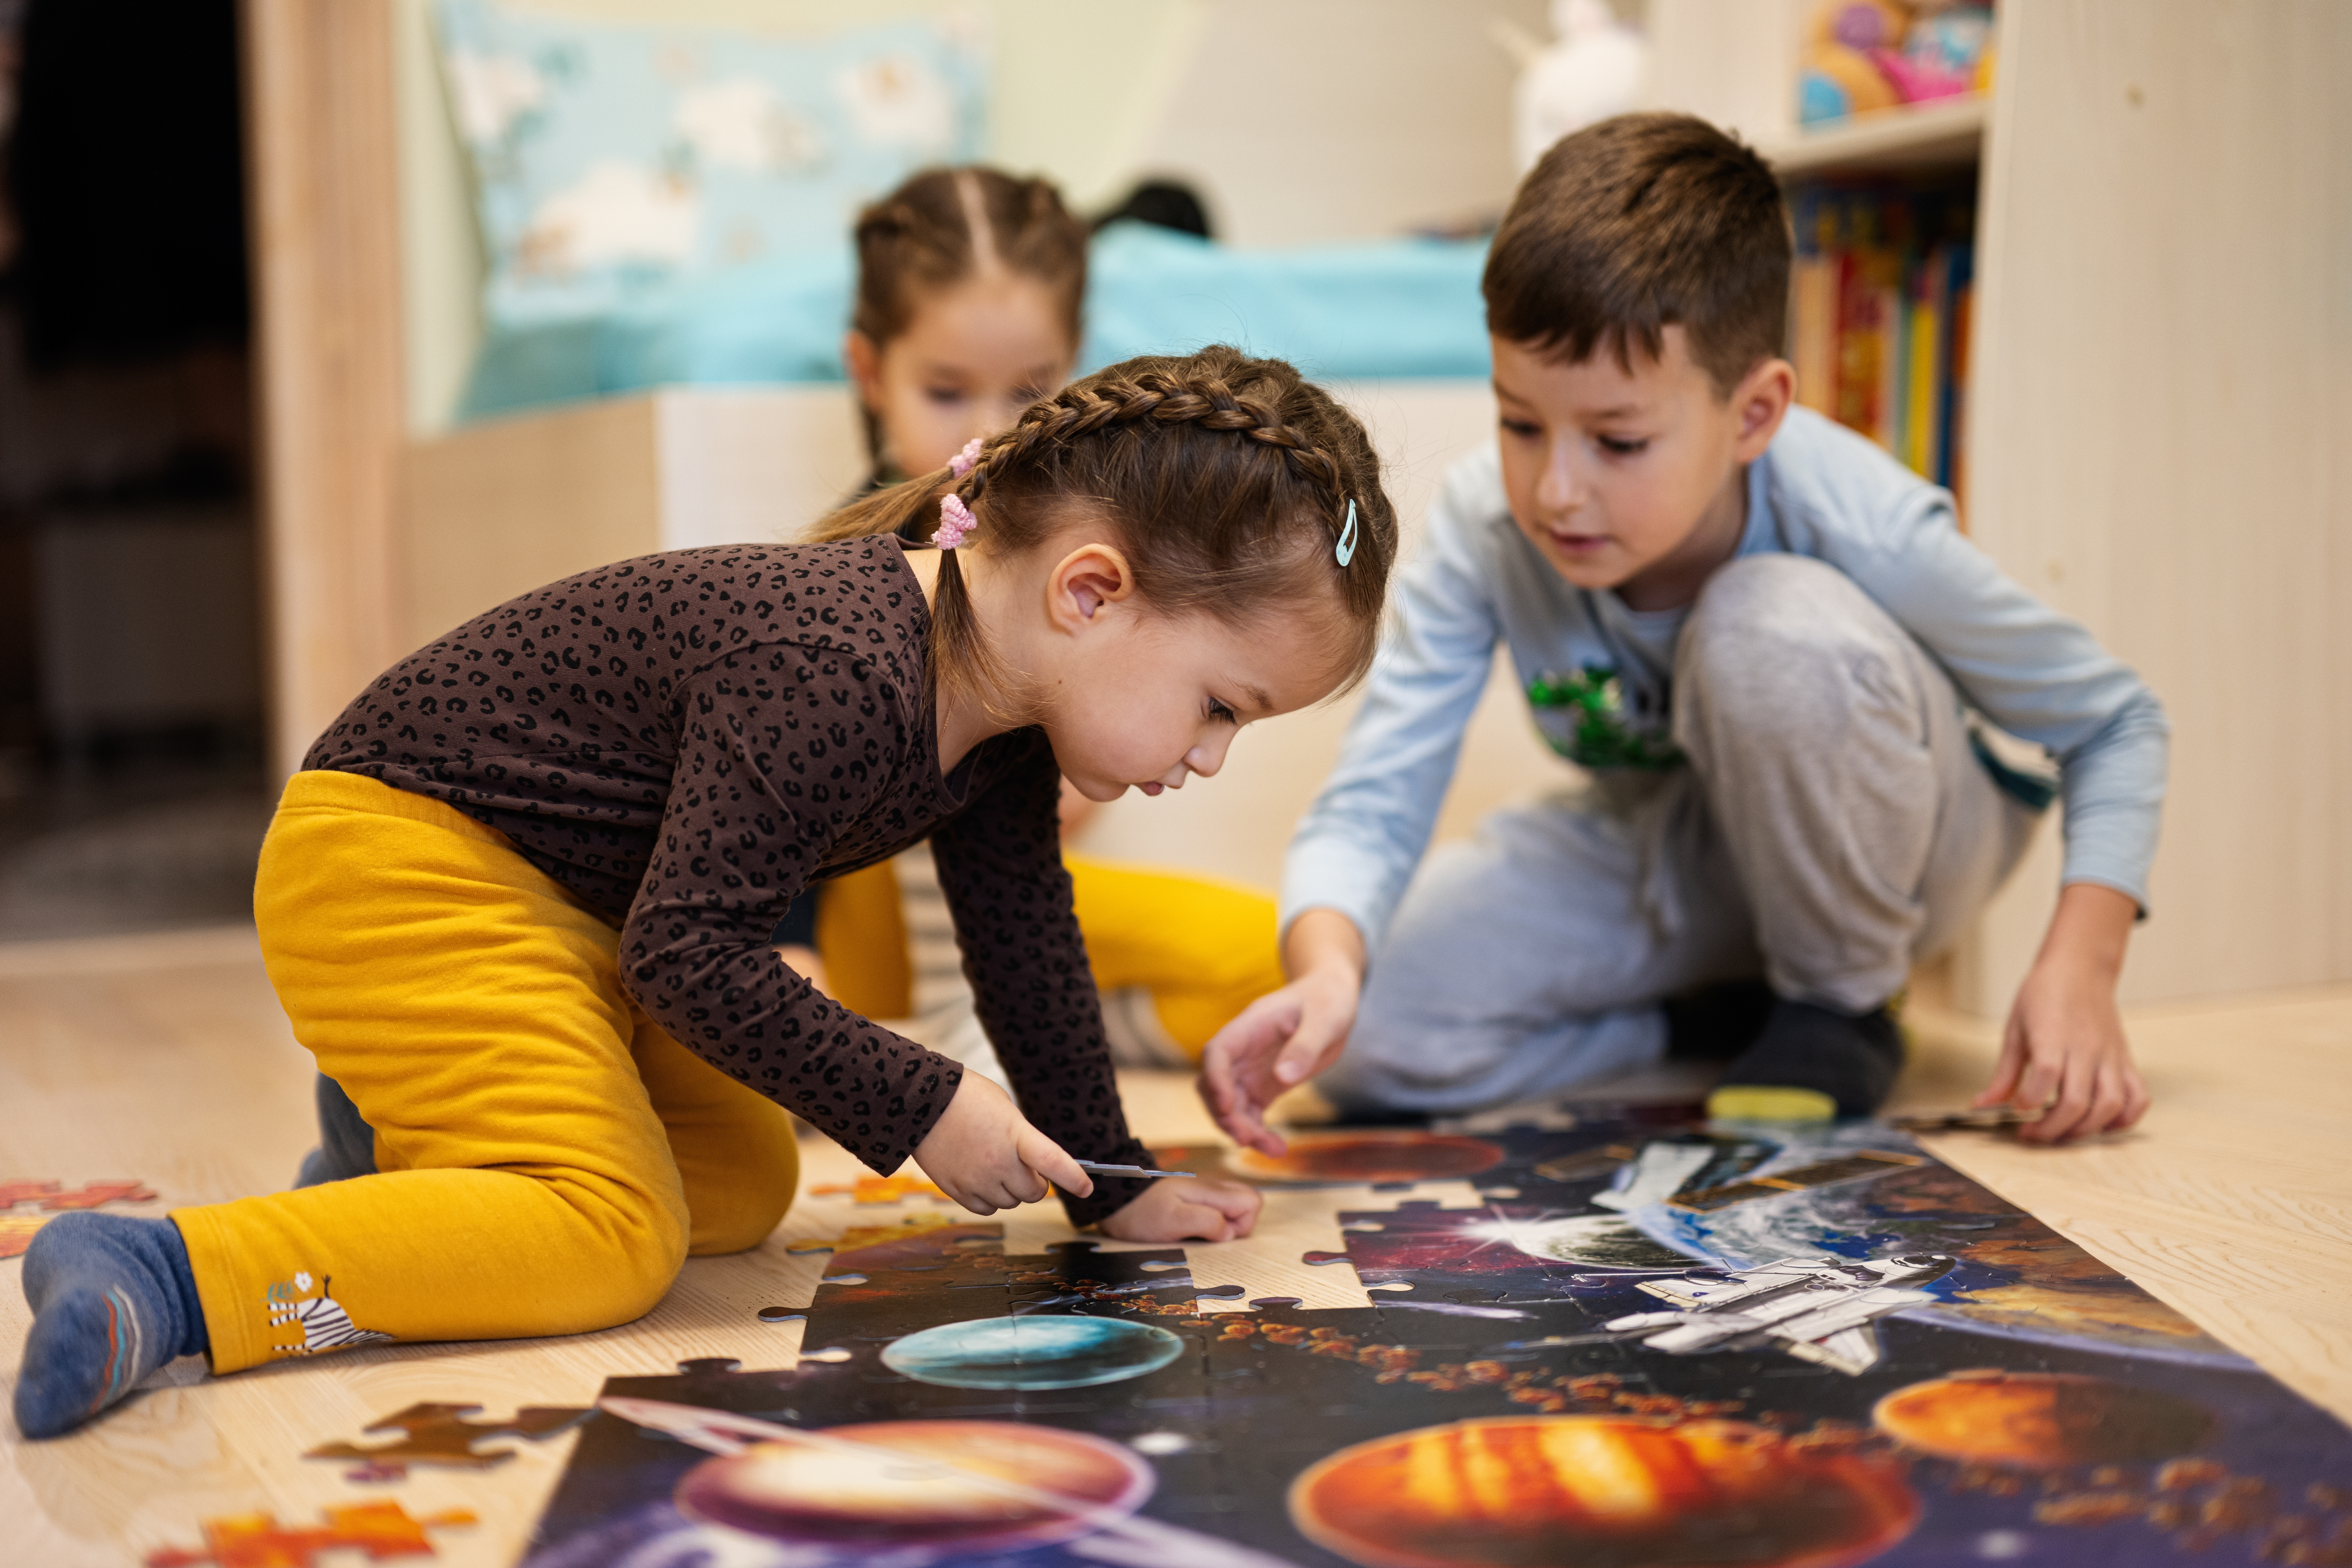 Des enfants travaillent sur un puzzle | Source : Shutterstock